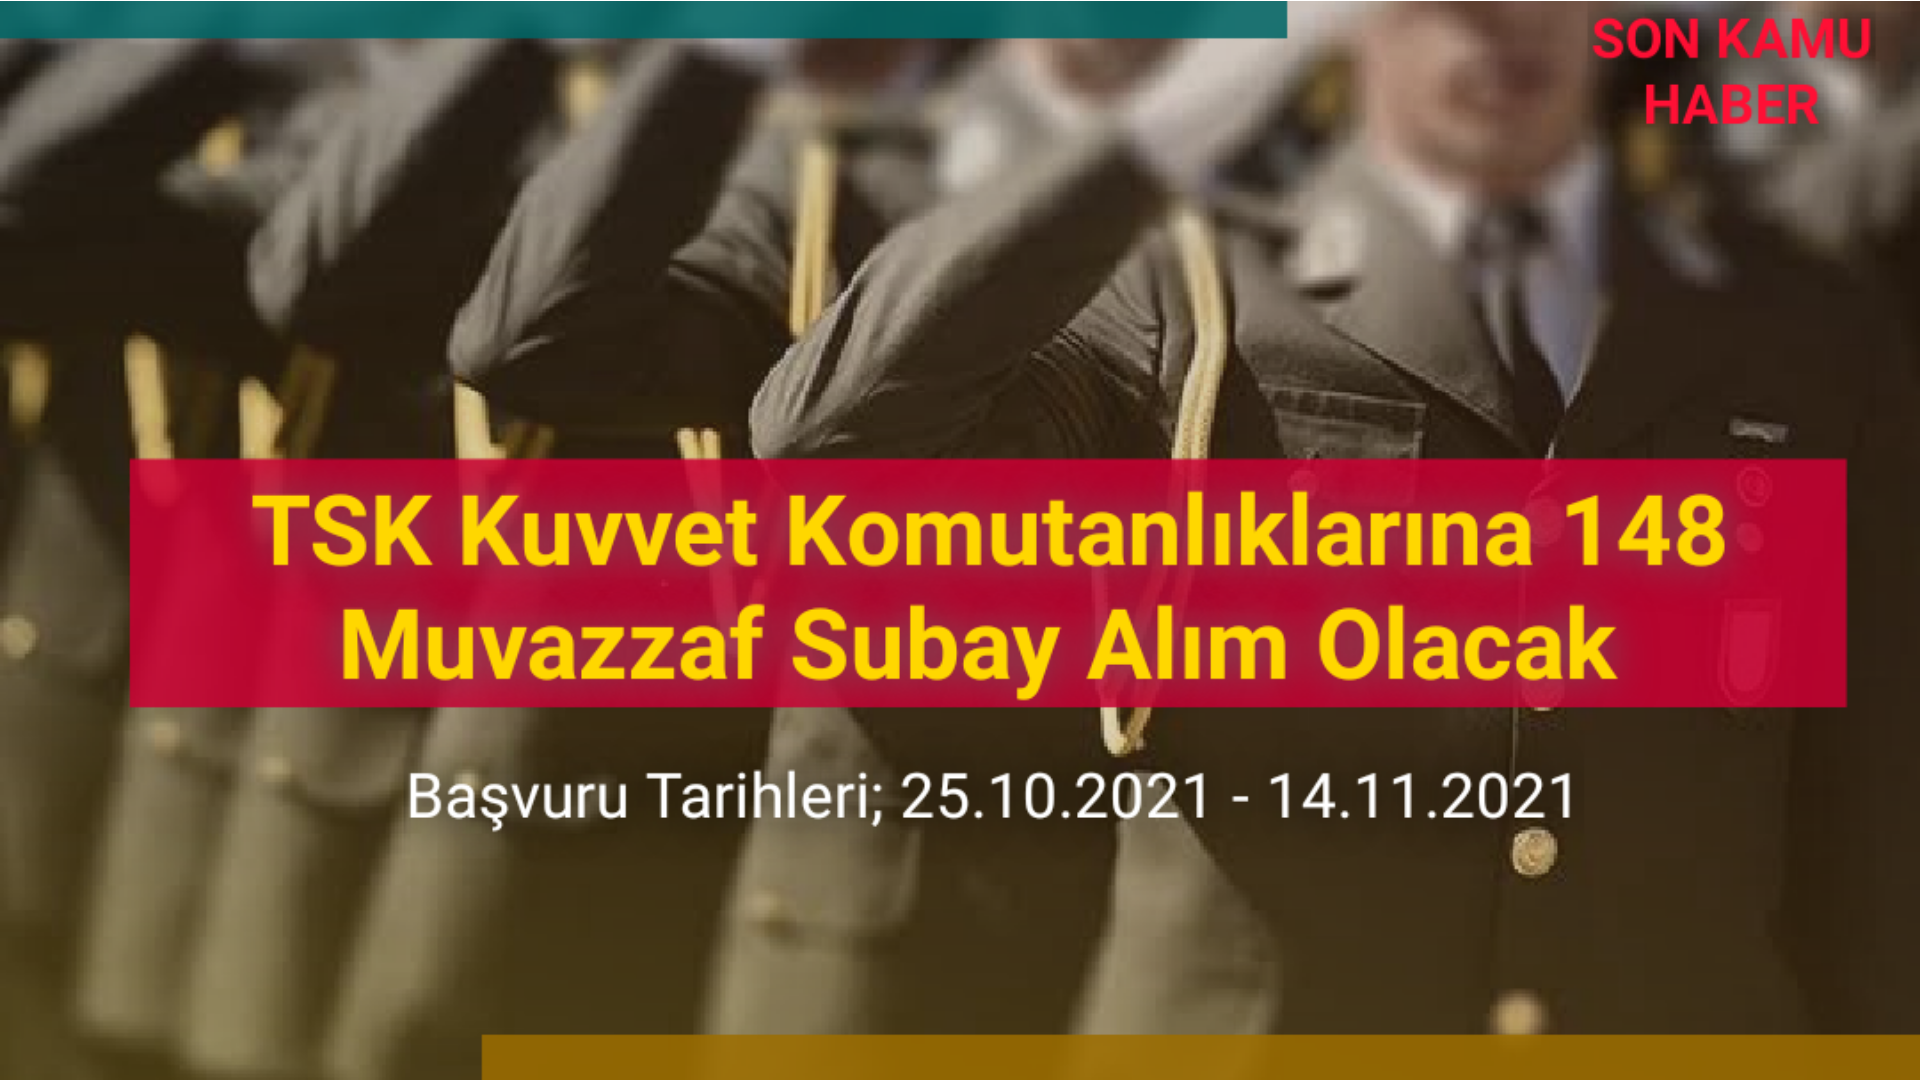 TSK Kuvvet Komutanlıklarına 148 Muvazzaf Subay Alım Olacak 2021